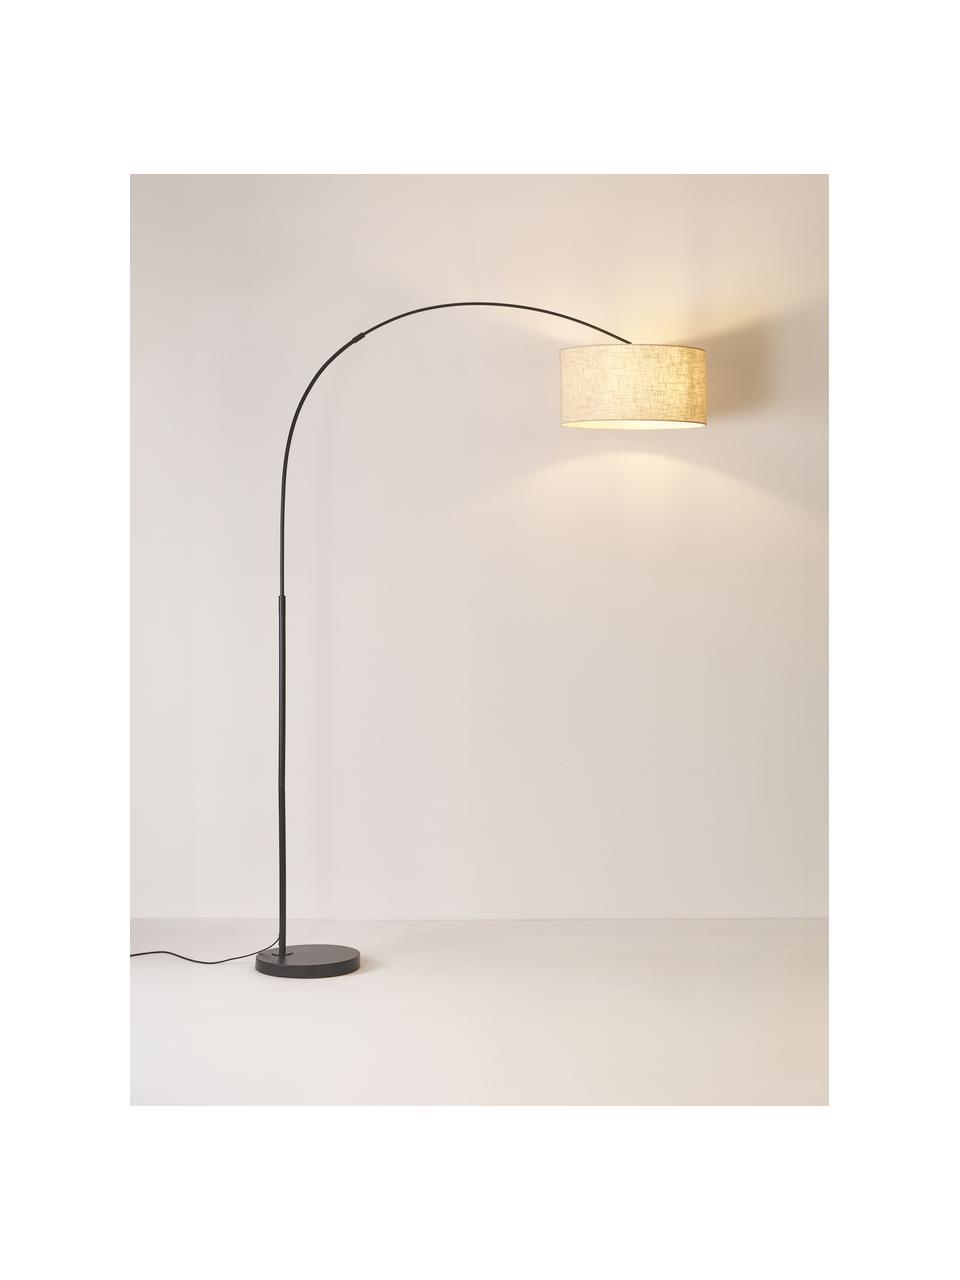 Grand lampadaire arc Niels, Beige clair, noir, haut. 218 cm